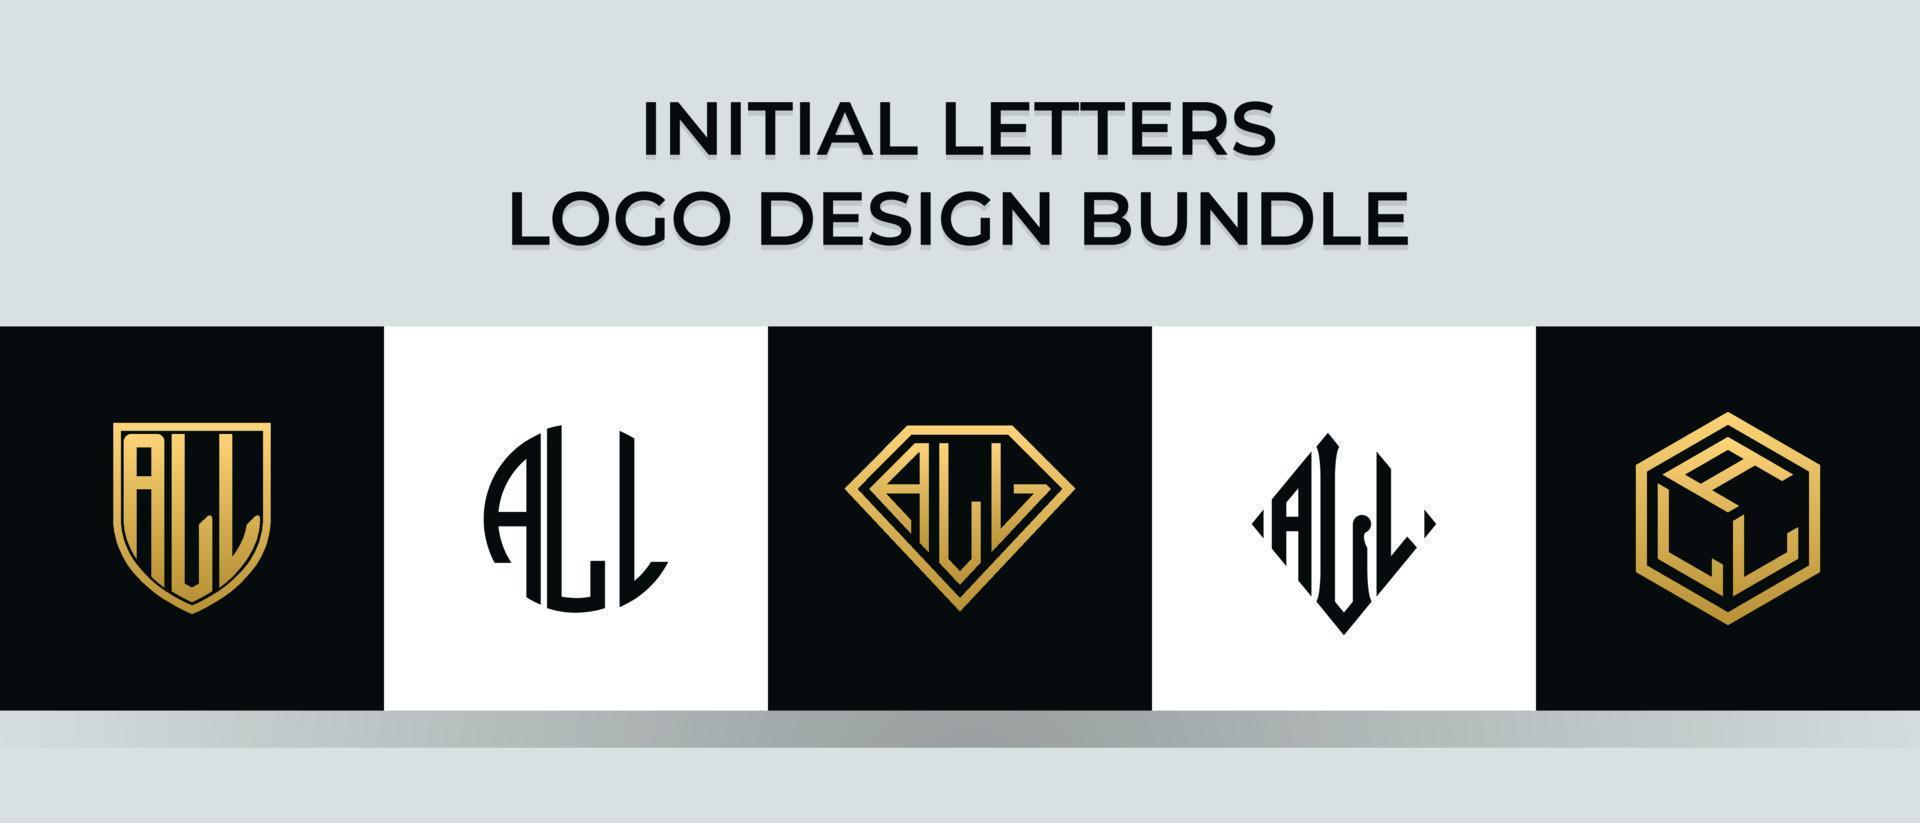 beginletters bundel alle logo-ontwerpen vector